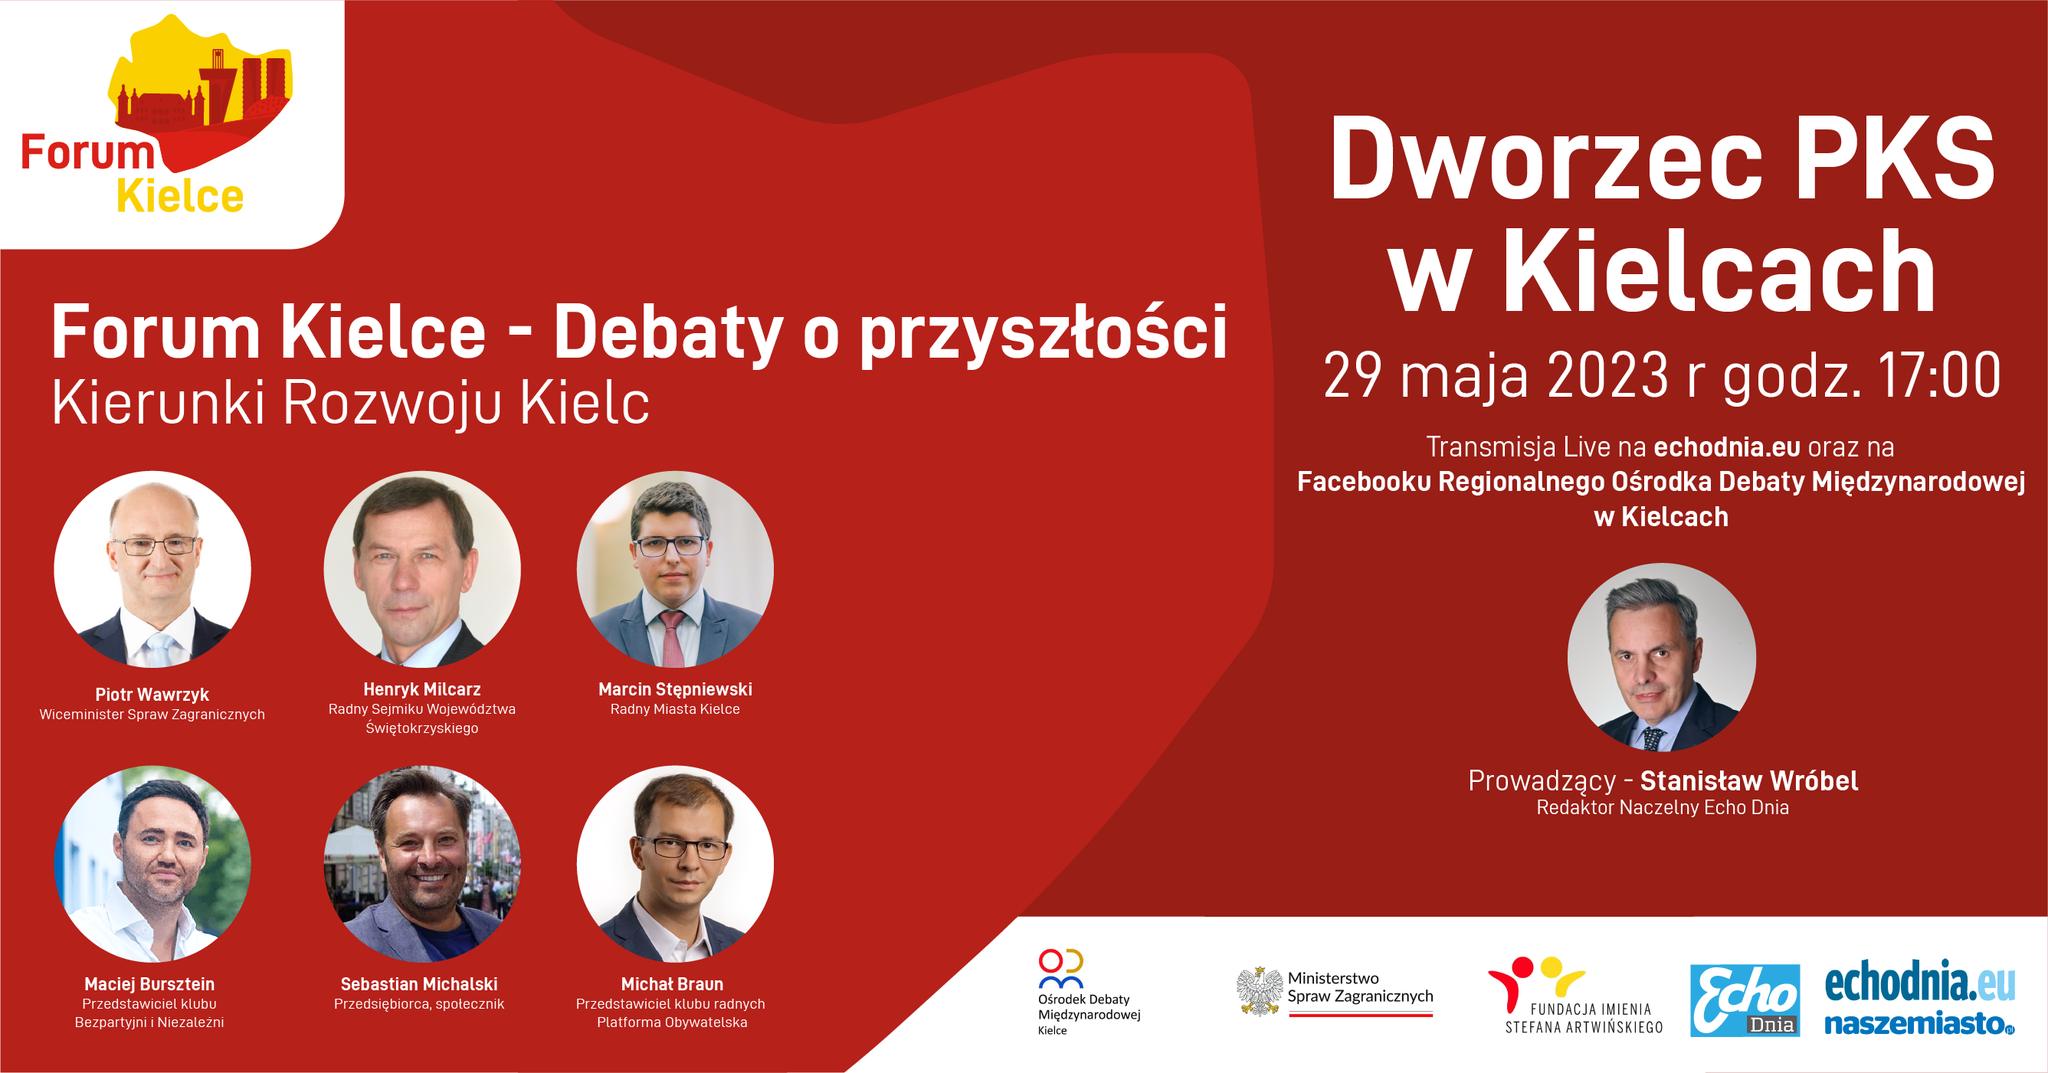 Już wkrótce odbędzie się debata poświęcona przyszłości Kielc